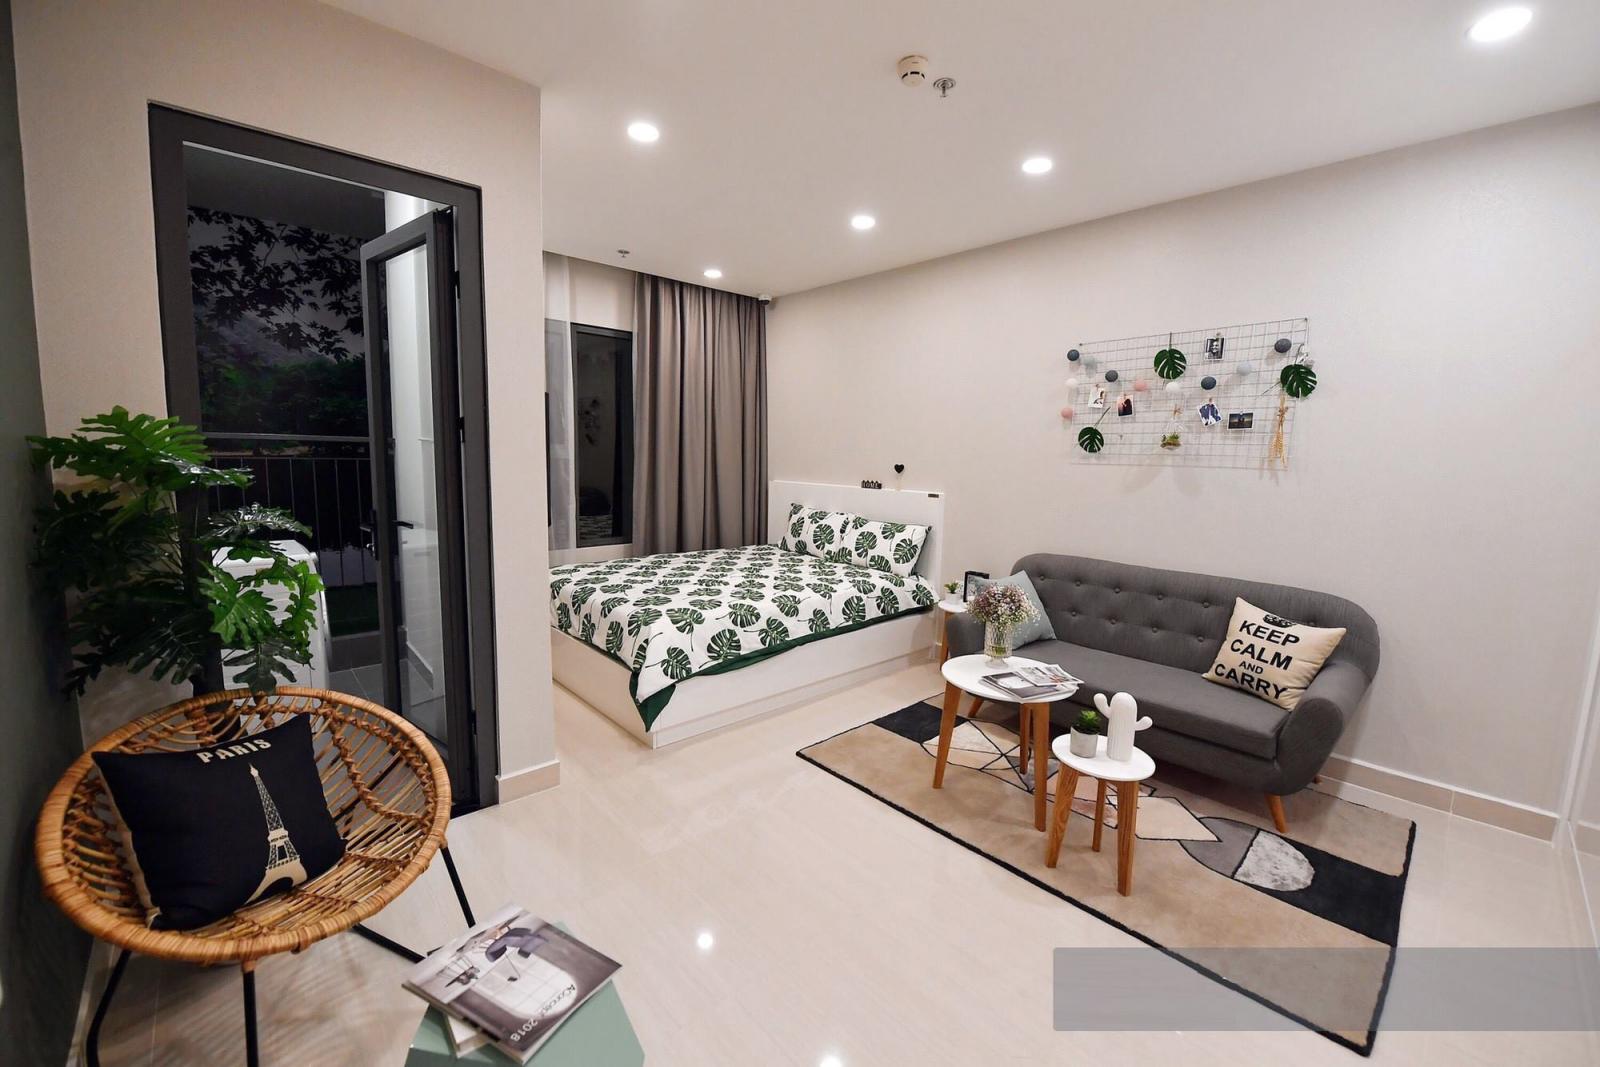 Căn hộ Studio Vinhomes Smart City Hà Nội là một lựa chọn hoàn hảo cho những người đang tìm kiếm một không gian sống hiện đại và tiện nghi. Hãy cùng chúng tôi khám phá hình ảnh đẹp nhất về căn hộ Studio tại Vinhomes Smart City Hà Nội.